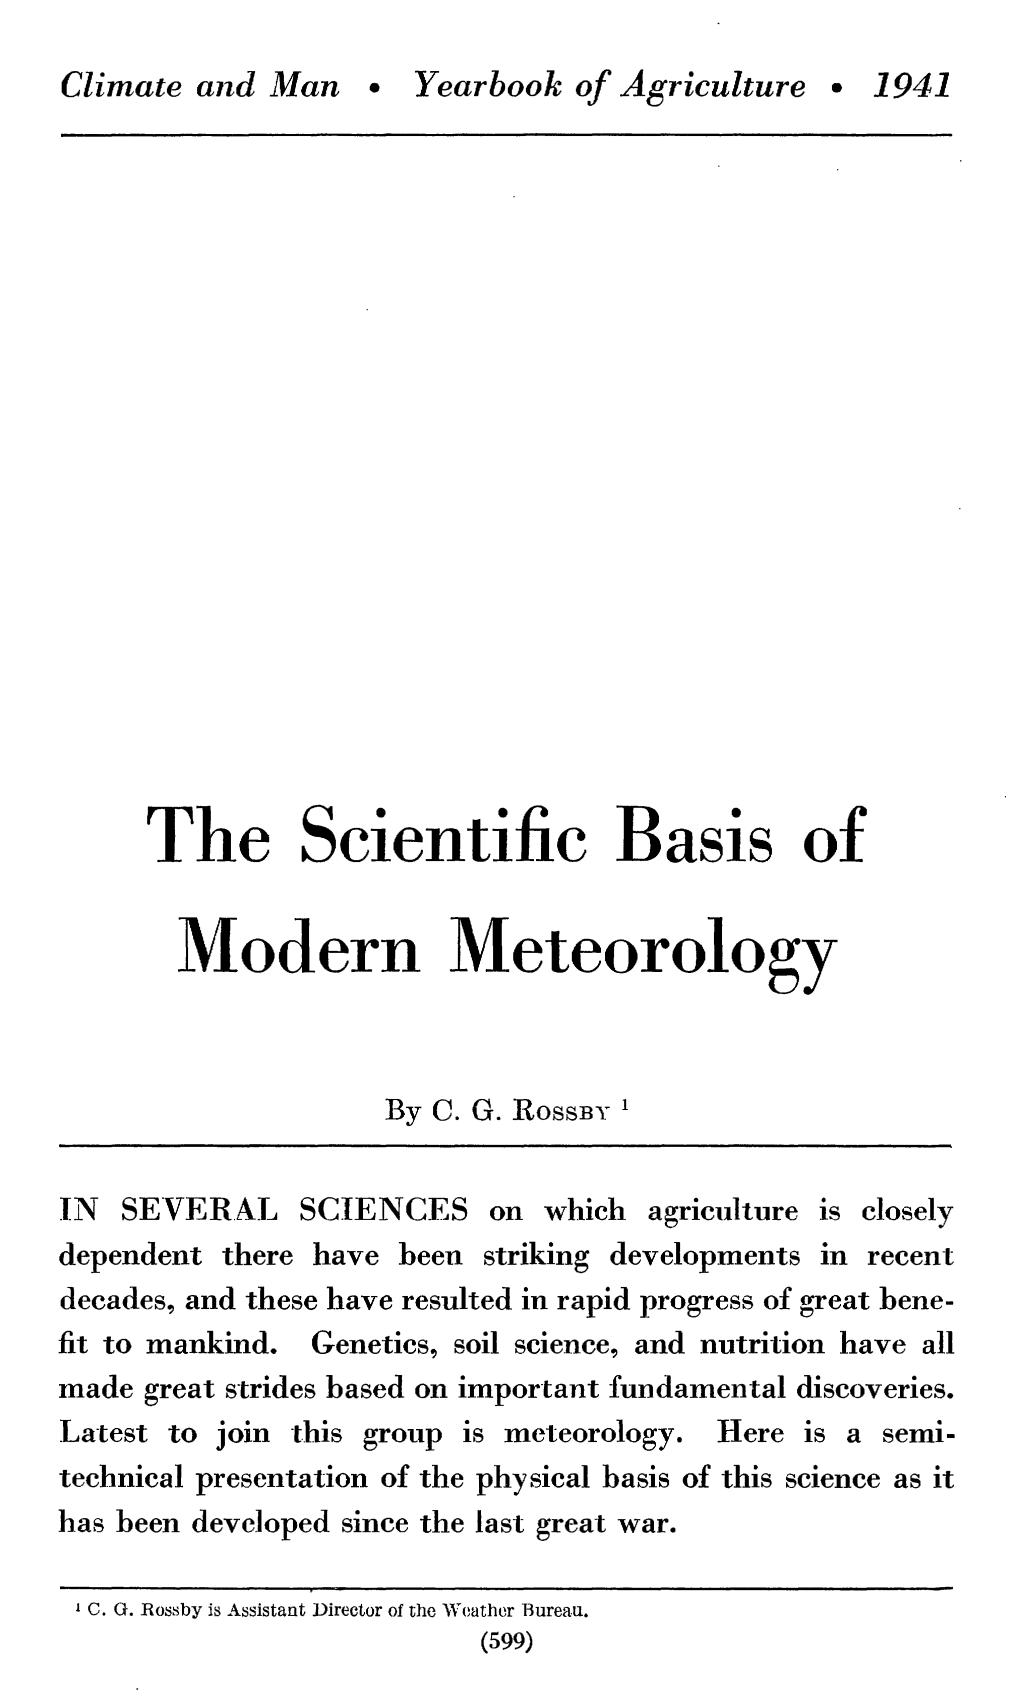 The Scientific Basis of Modern Meteorology